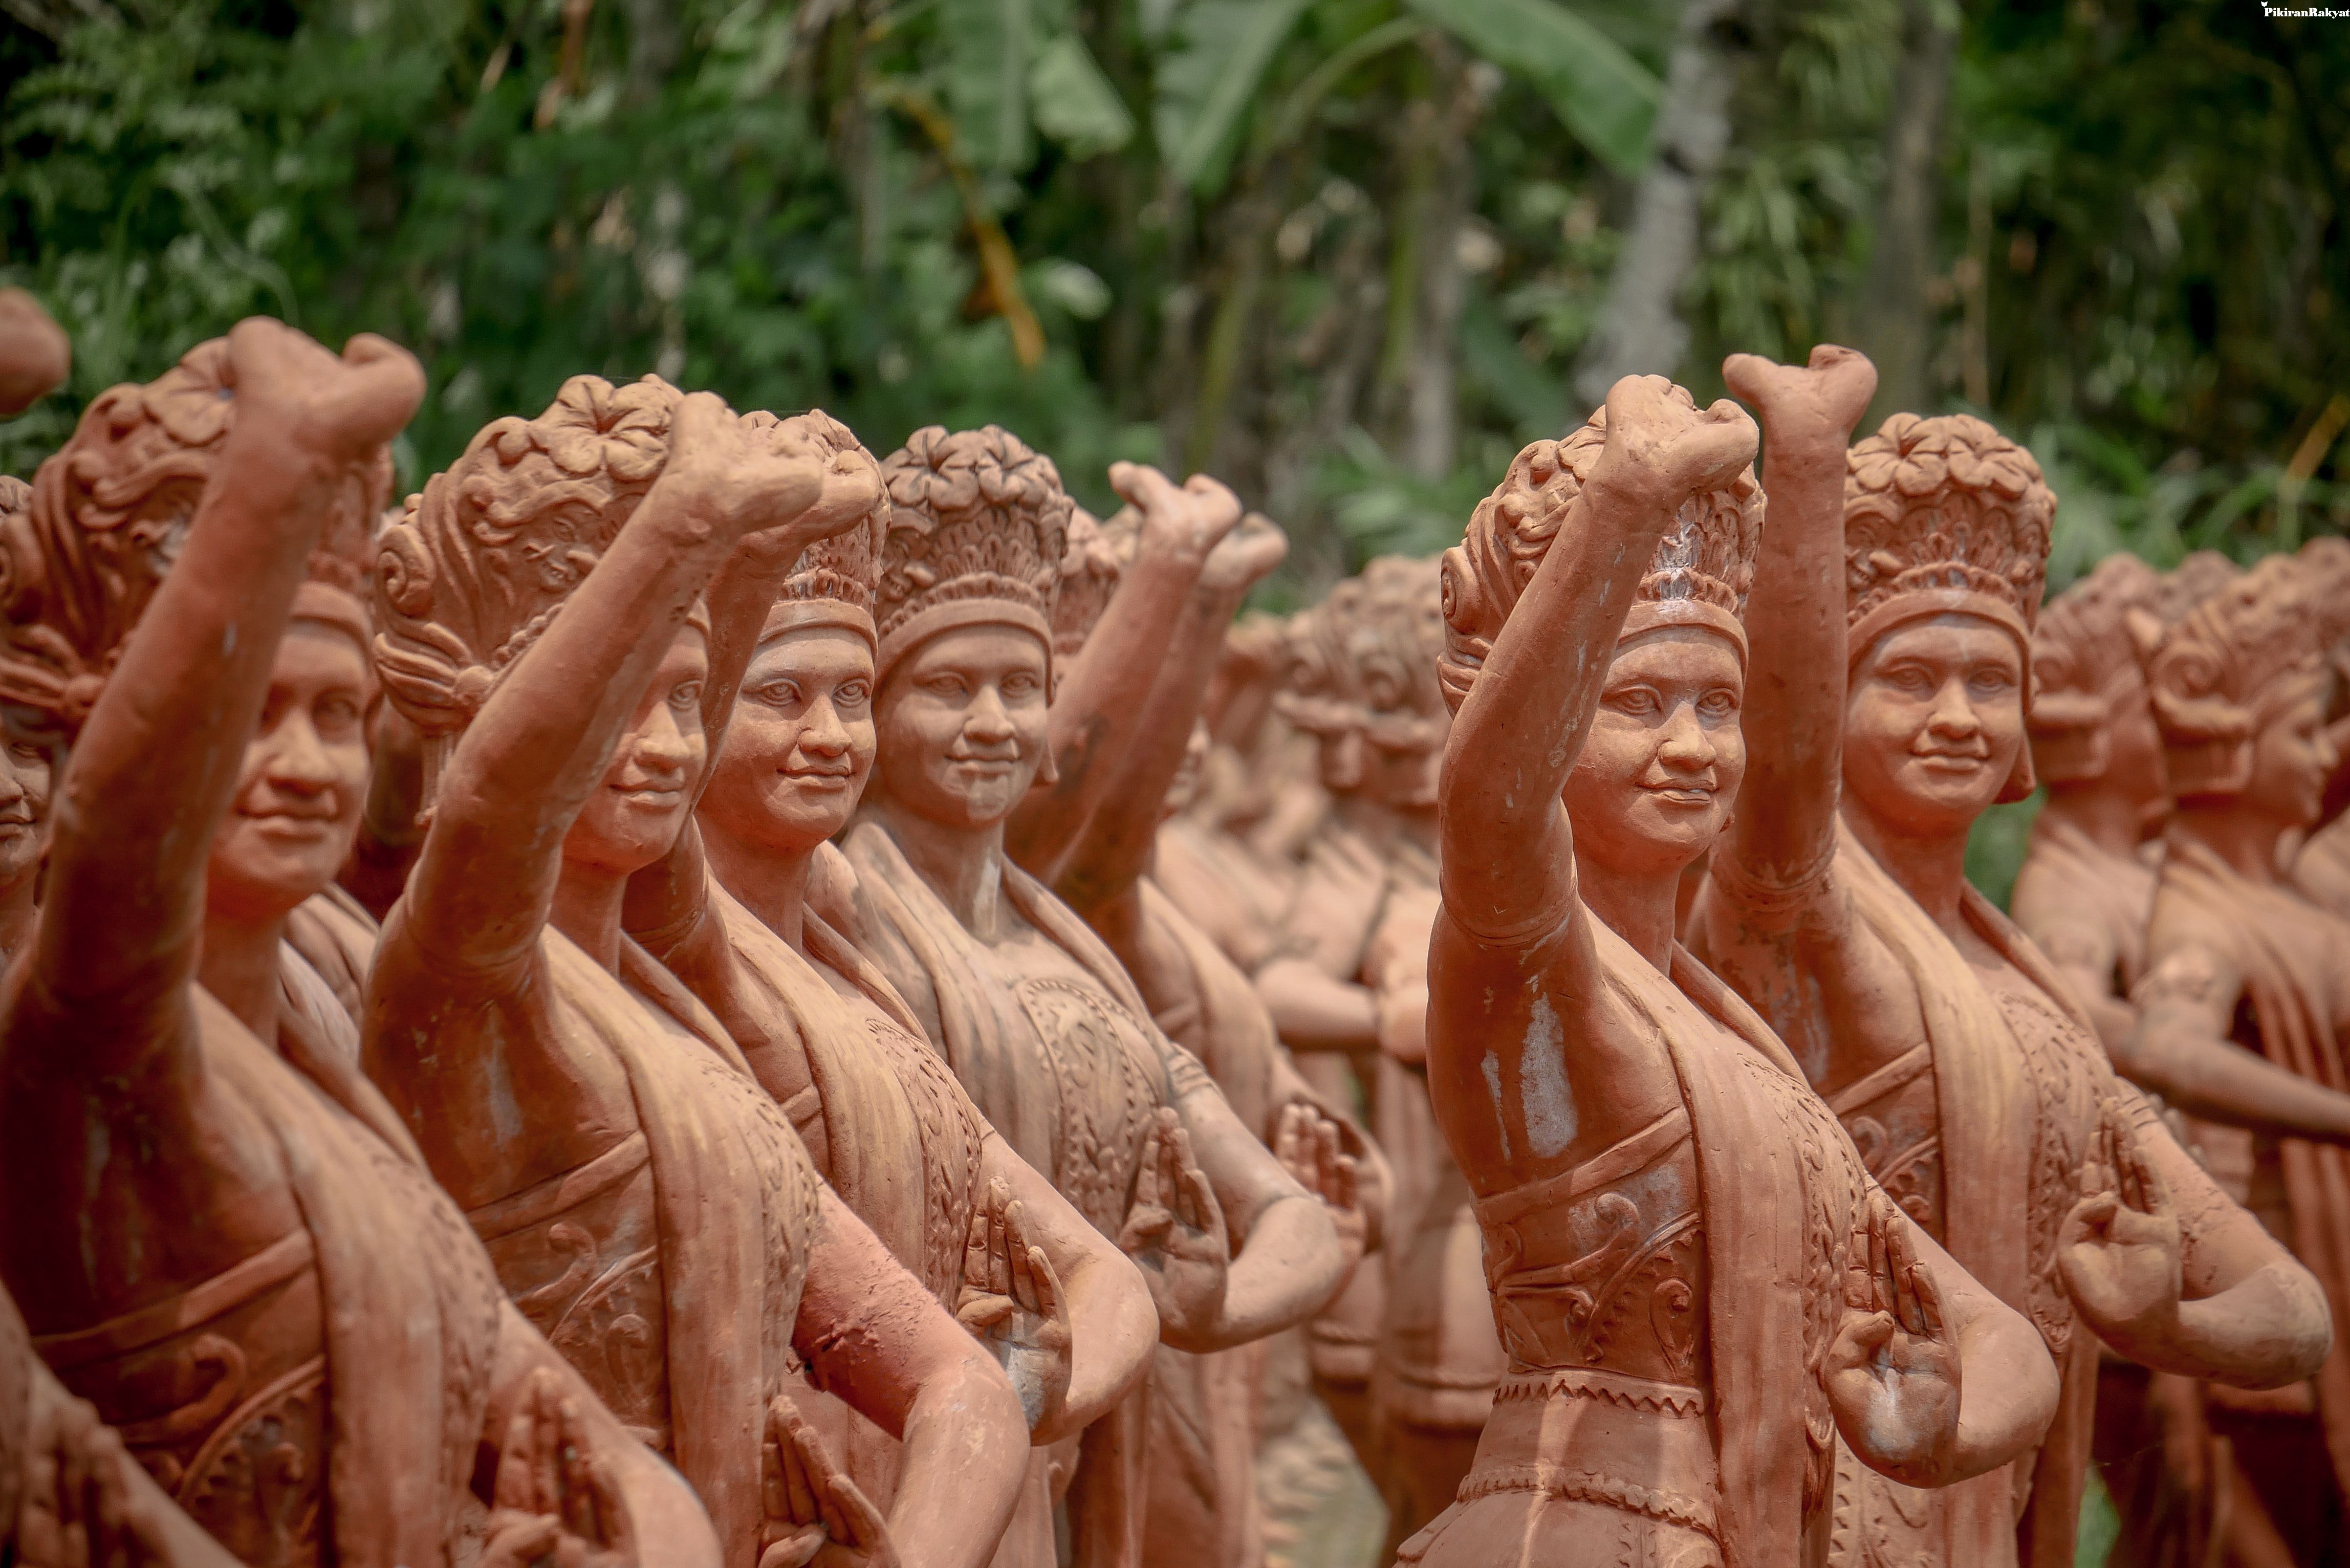 Taman Gandrung Terakota Banyuwangi merupakan wisata patung para penari Gandrung yang terbuat dari tembikar/terakota.